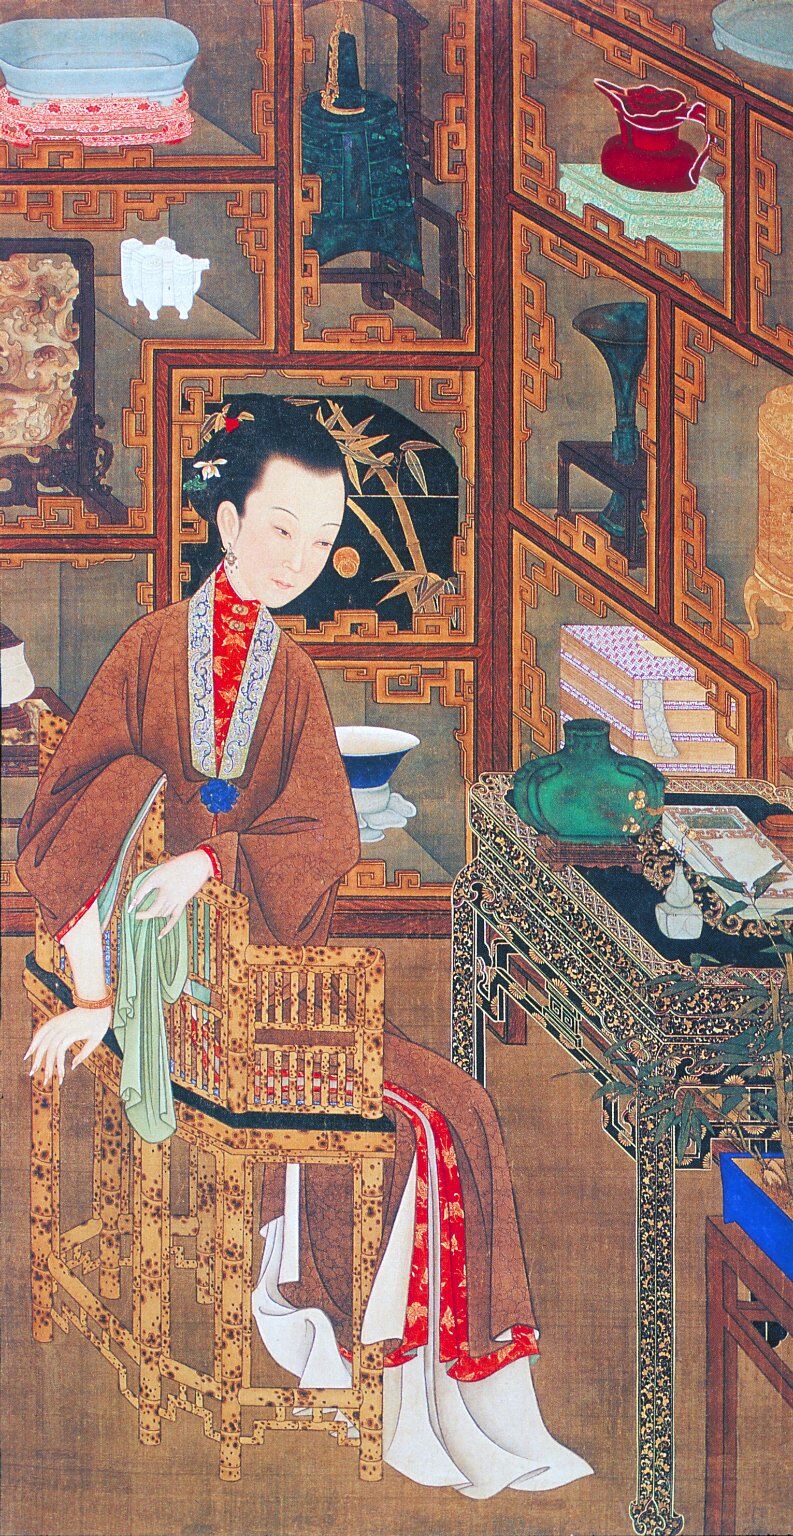 雍 亲王 十 二 美人 图 绘画书法 文化艺术